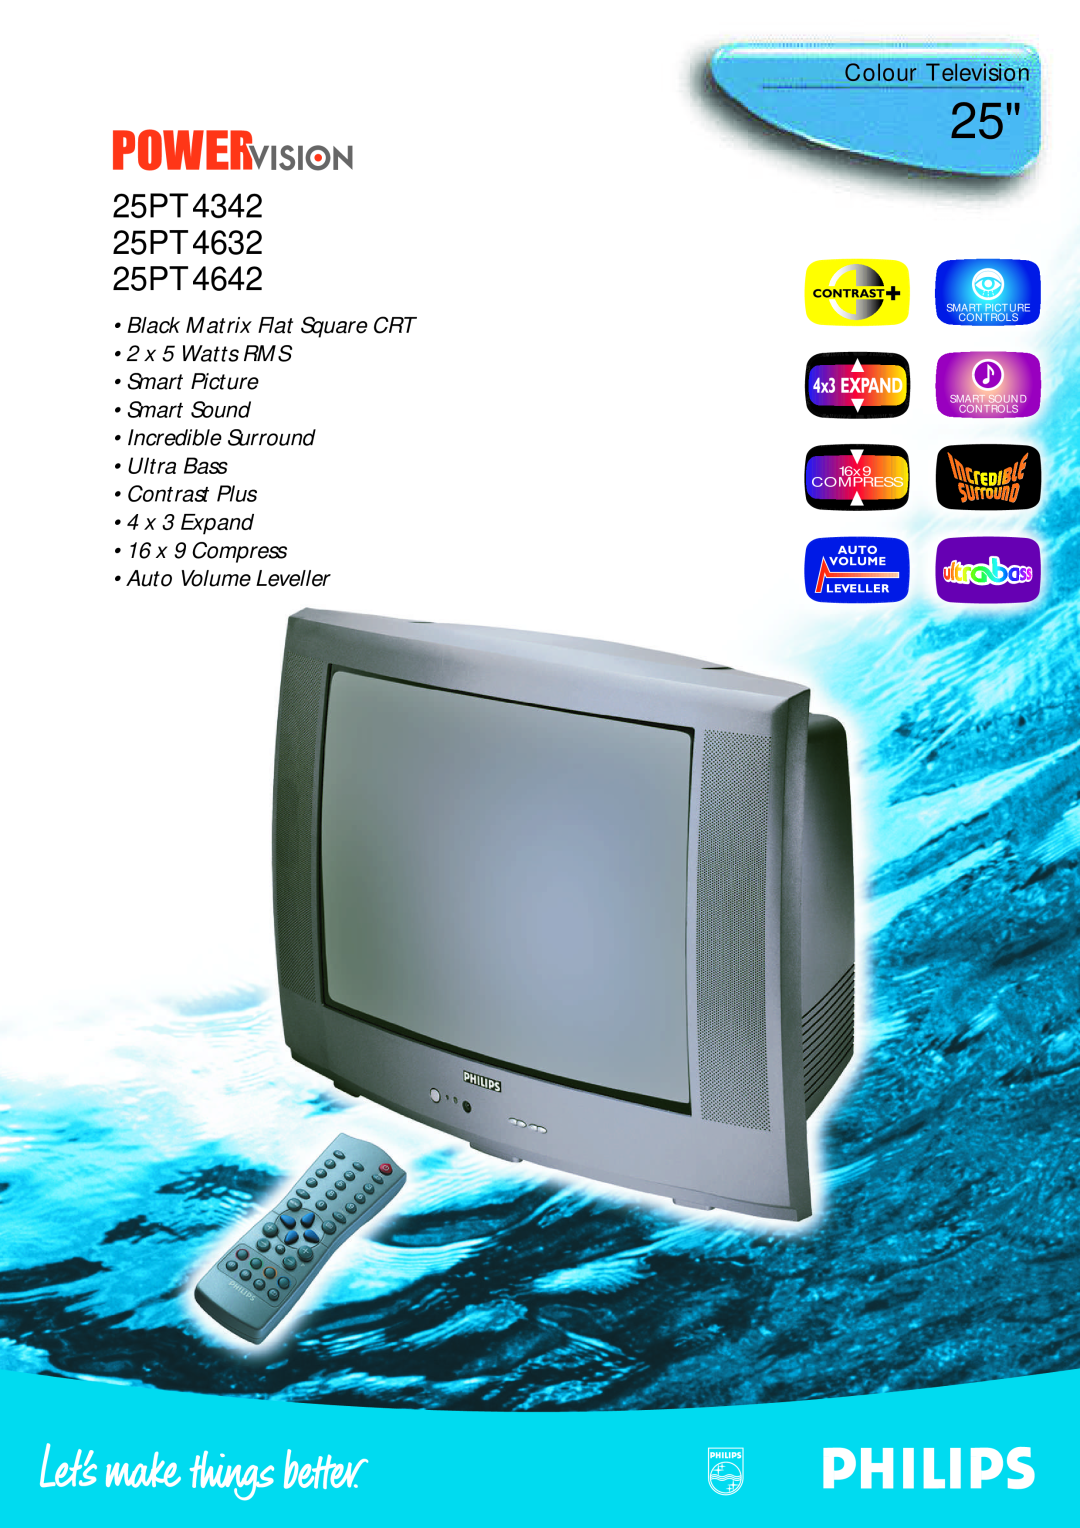 Philips manual Colour Television, 25PT4342 25PT4632 25PT4642, 16 x 9 Compress Auto Volume Leveller, 16x9 COMPRESS 